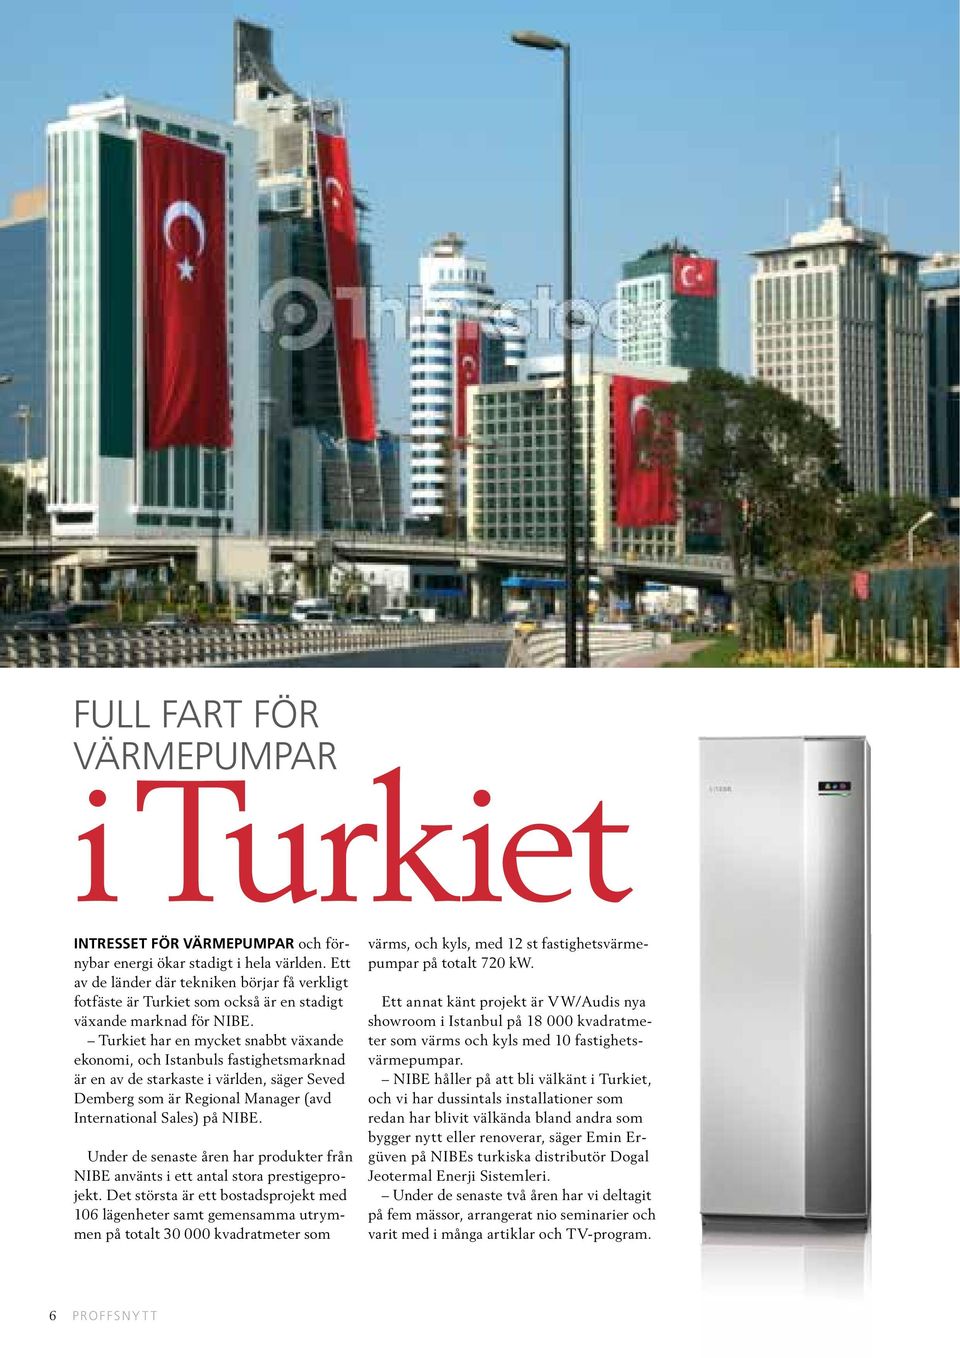 Turkiet har en mycket snabbt växande ekonomi, och Istanbuls fastighetsmarknad är en av de starkaste i världen, säger Seved Demberg som är Regional Manager (avd International Sales) på NIBE.